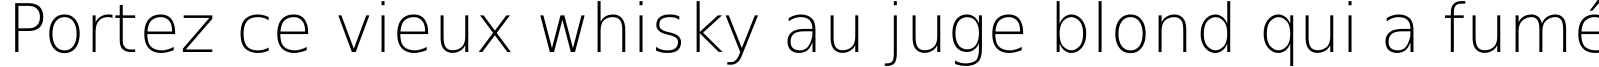 Пример написания шрифтом DejaVu Sans ExtraLight текста на французском